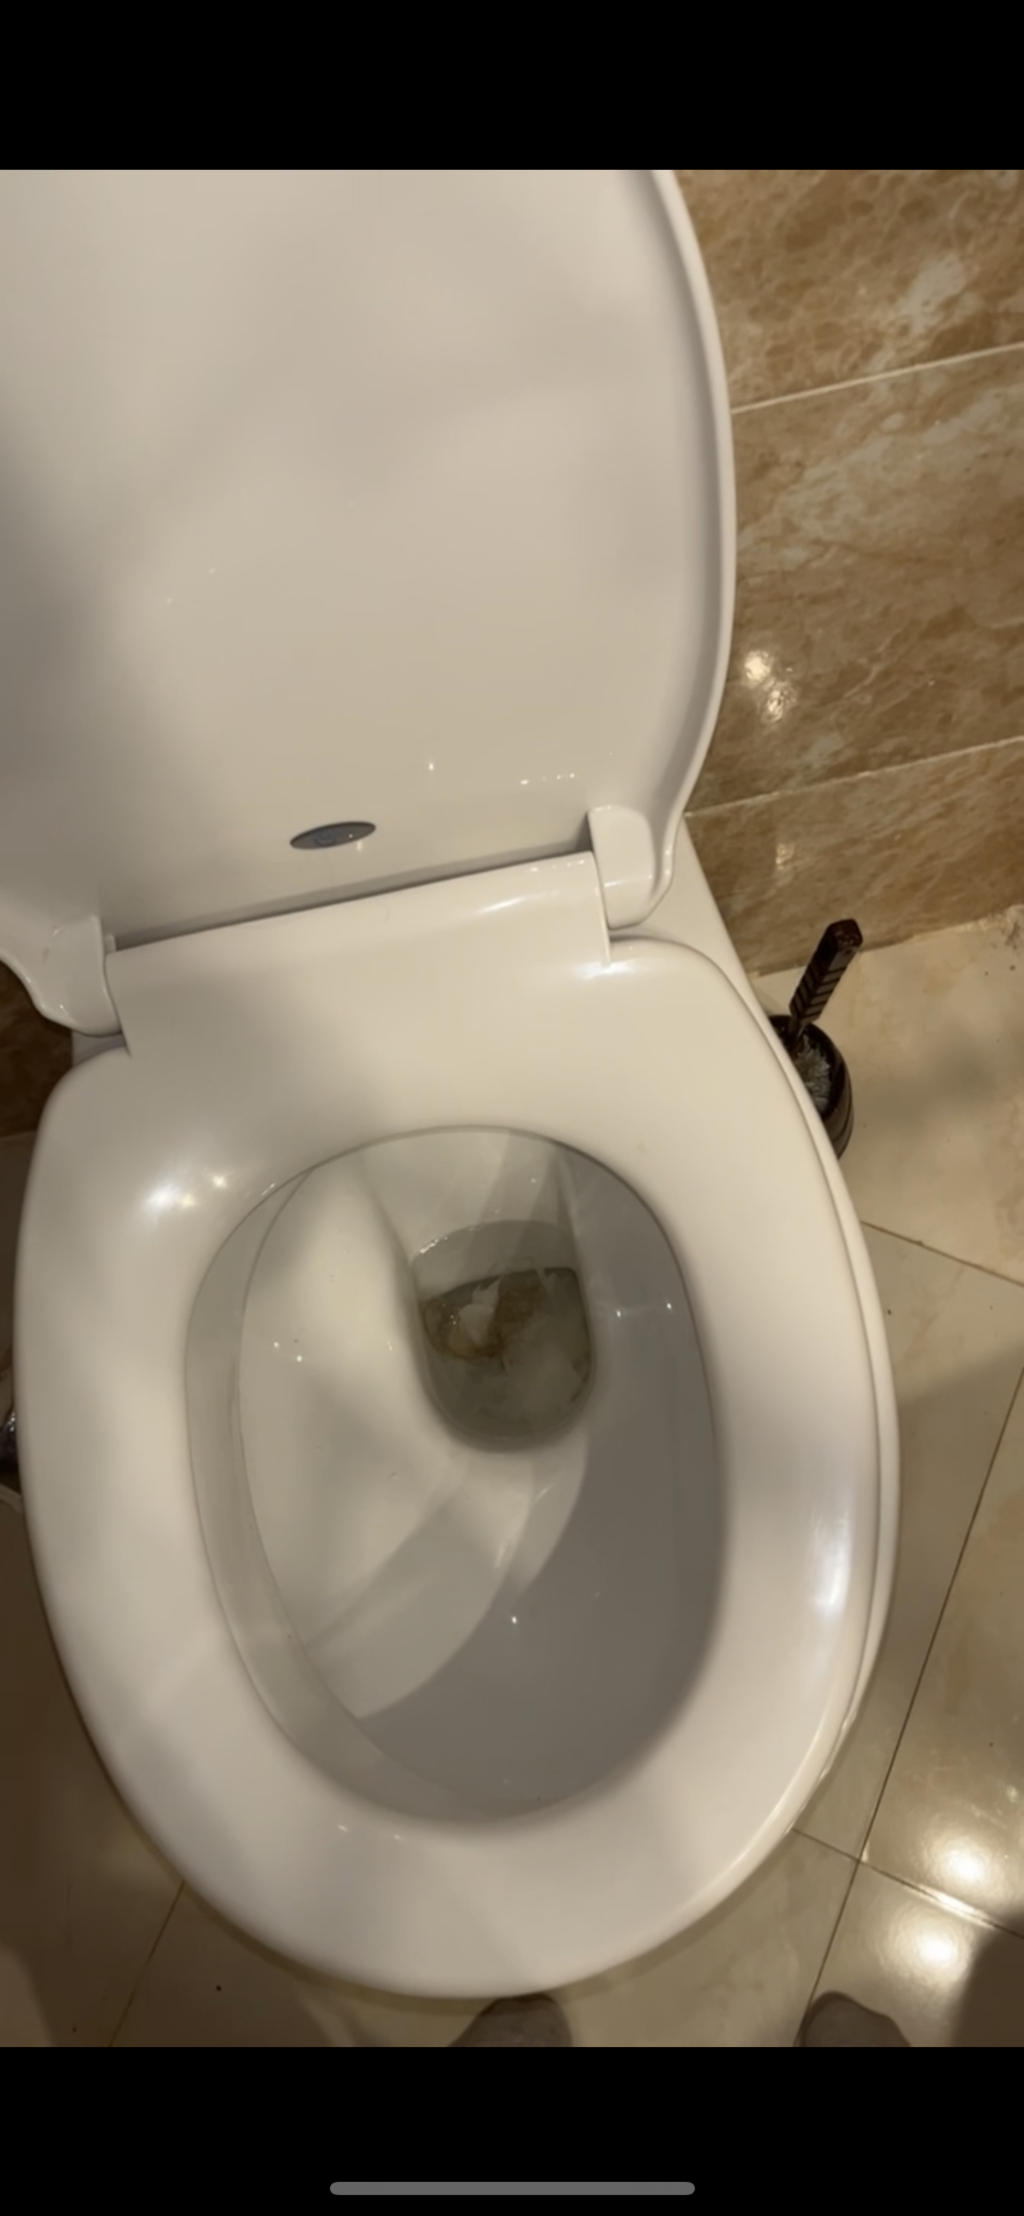 De toilet die niet doorspoelde en zo de eerste dag aantroffen